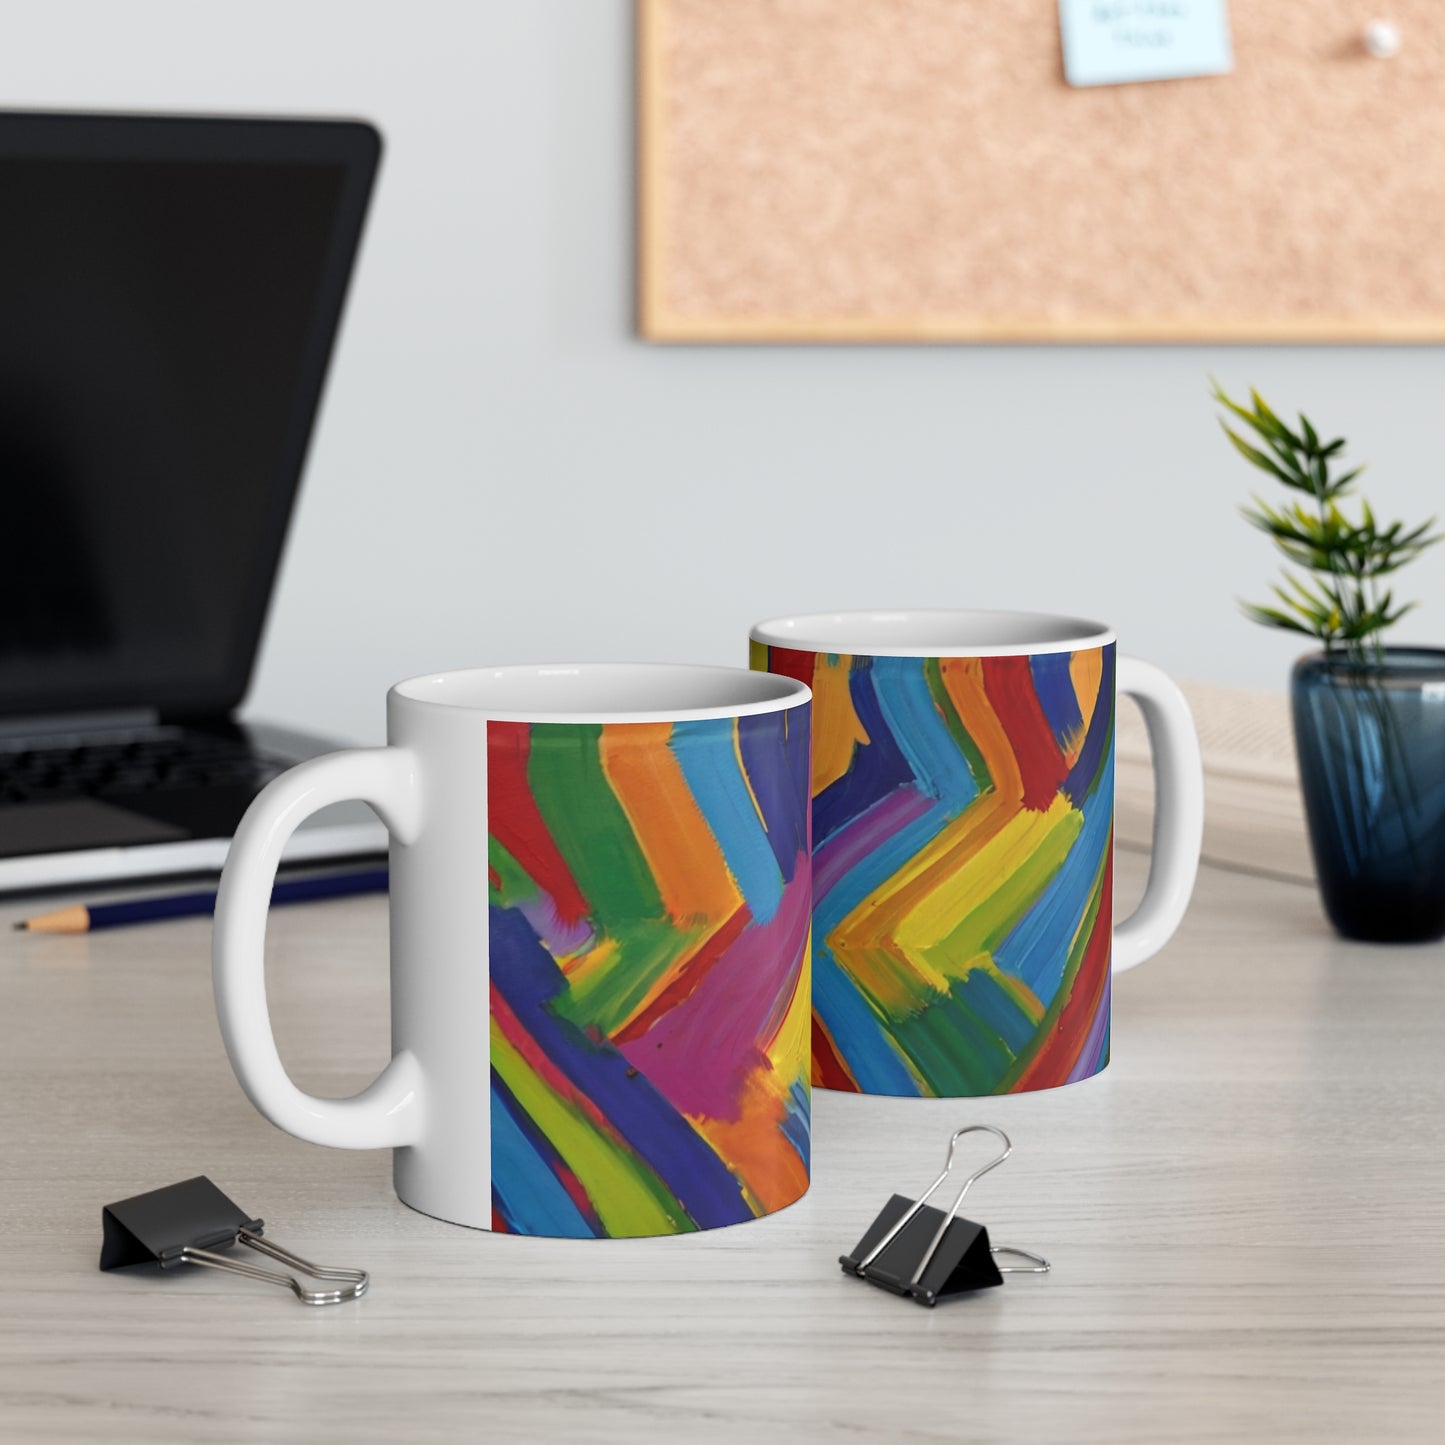 Messy Paint Zigzags Mug - Ceramic Coffee Mug 11oz